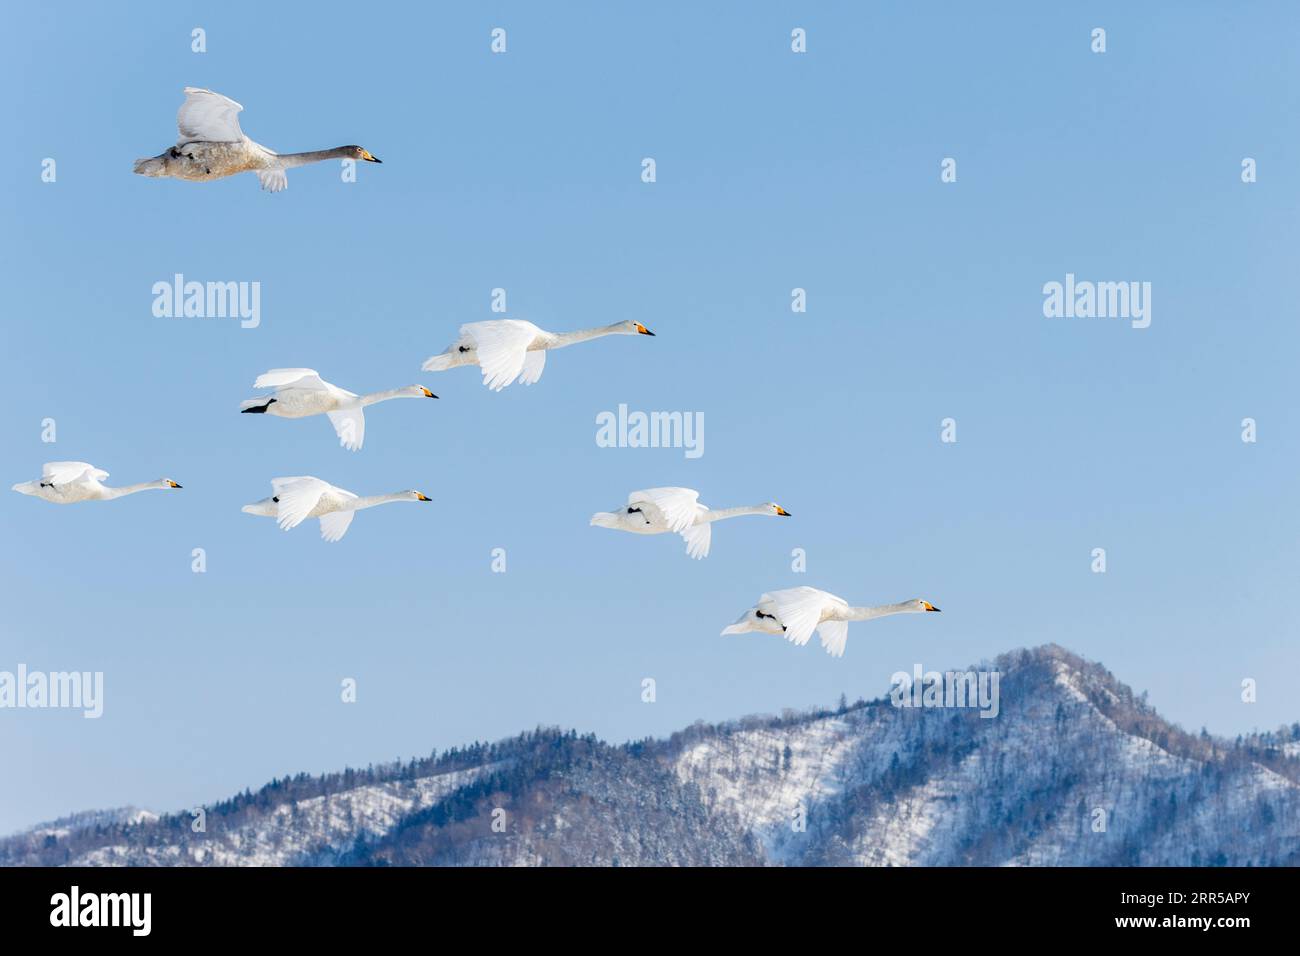 Whooper Swans (Cygnus cygnus), gregge in volo. Gruppo di 5 uccelli a mezz'aria contro il cielo blu con le nuvole. Lago Kussharo, Hokkaido, Giappone Foto Stock